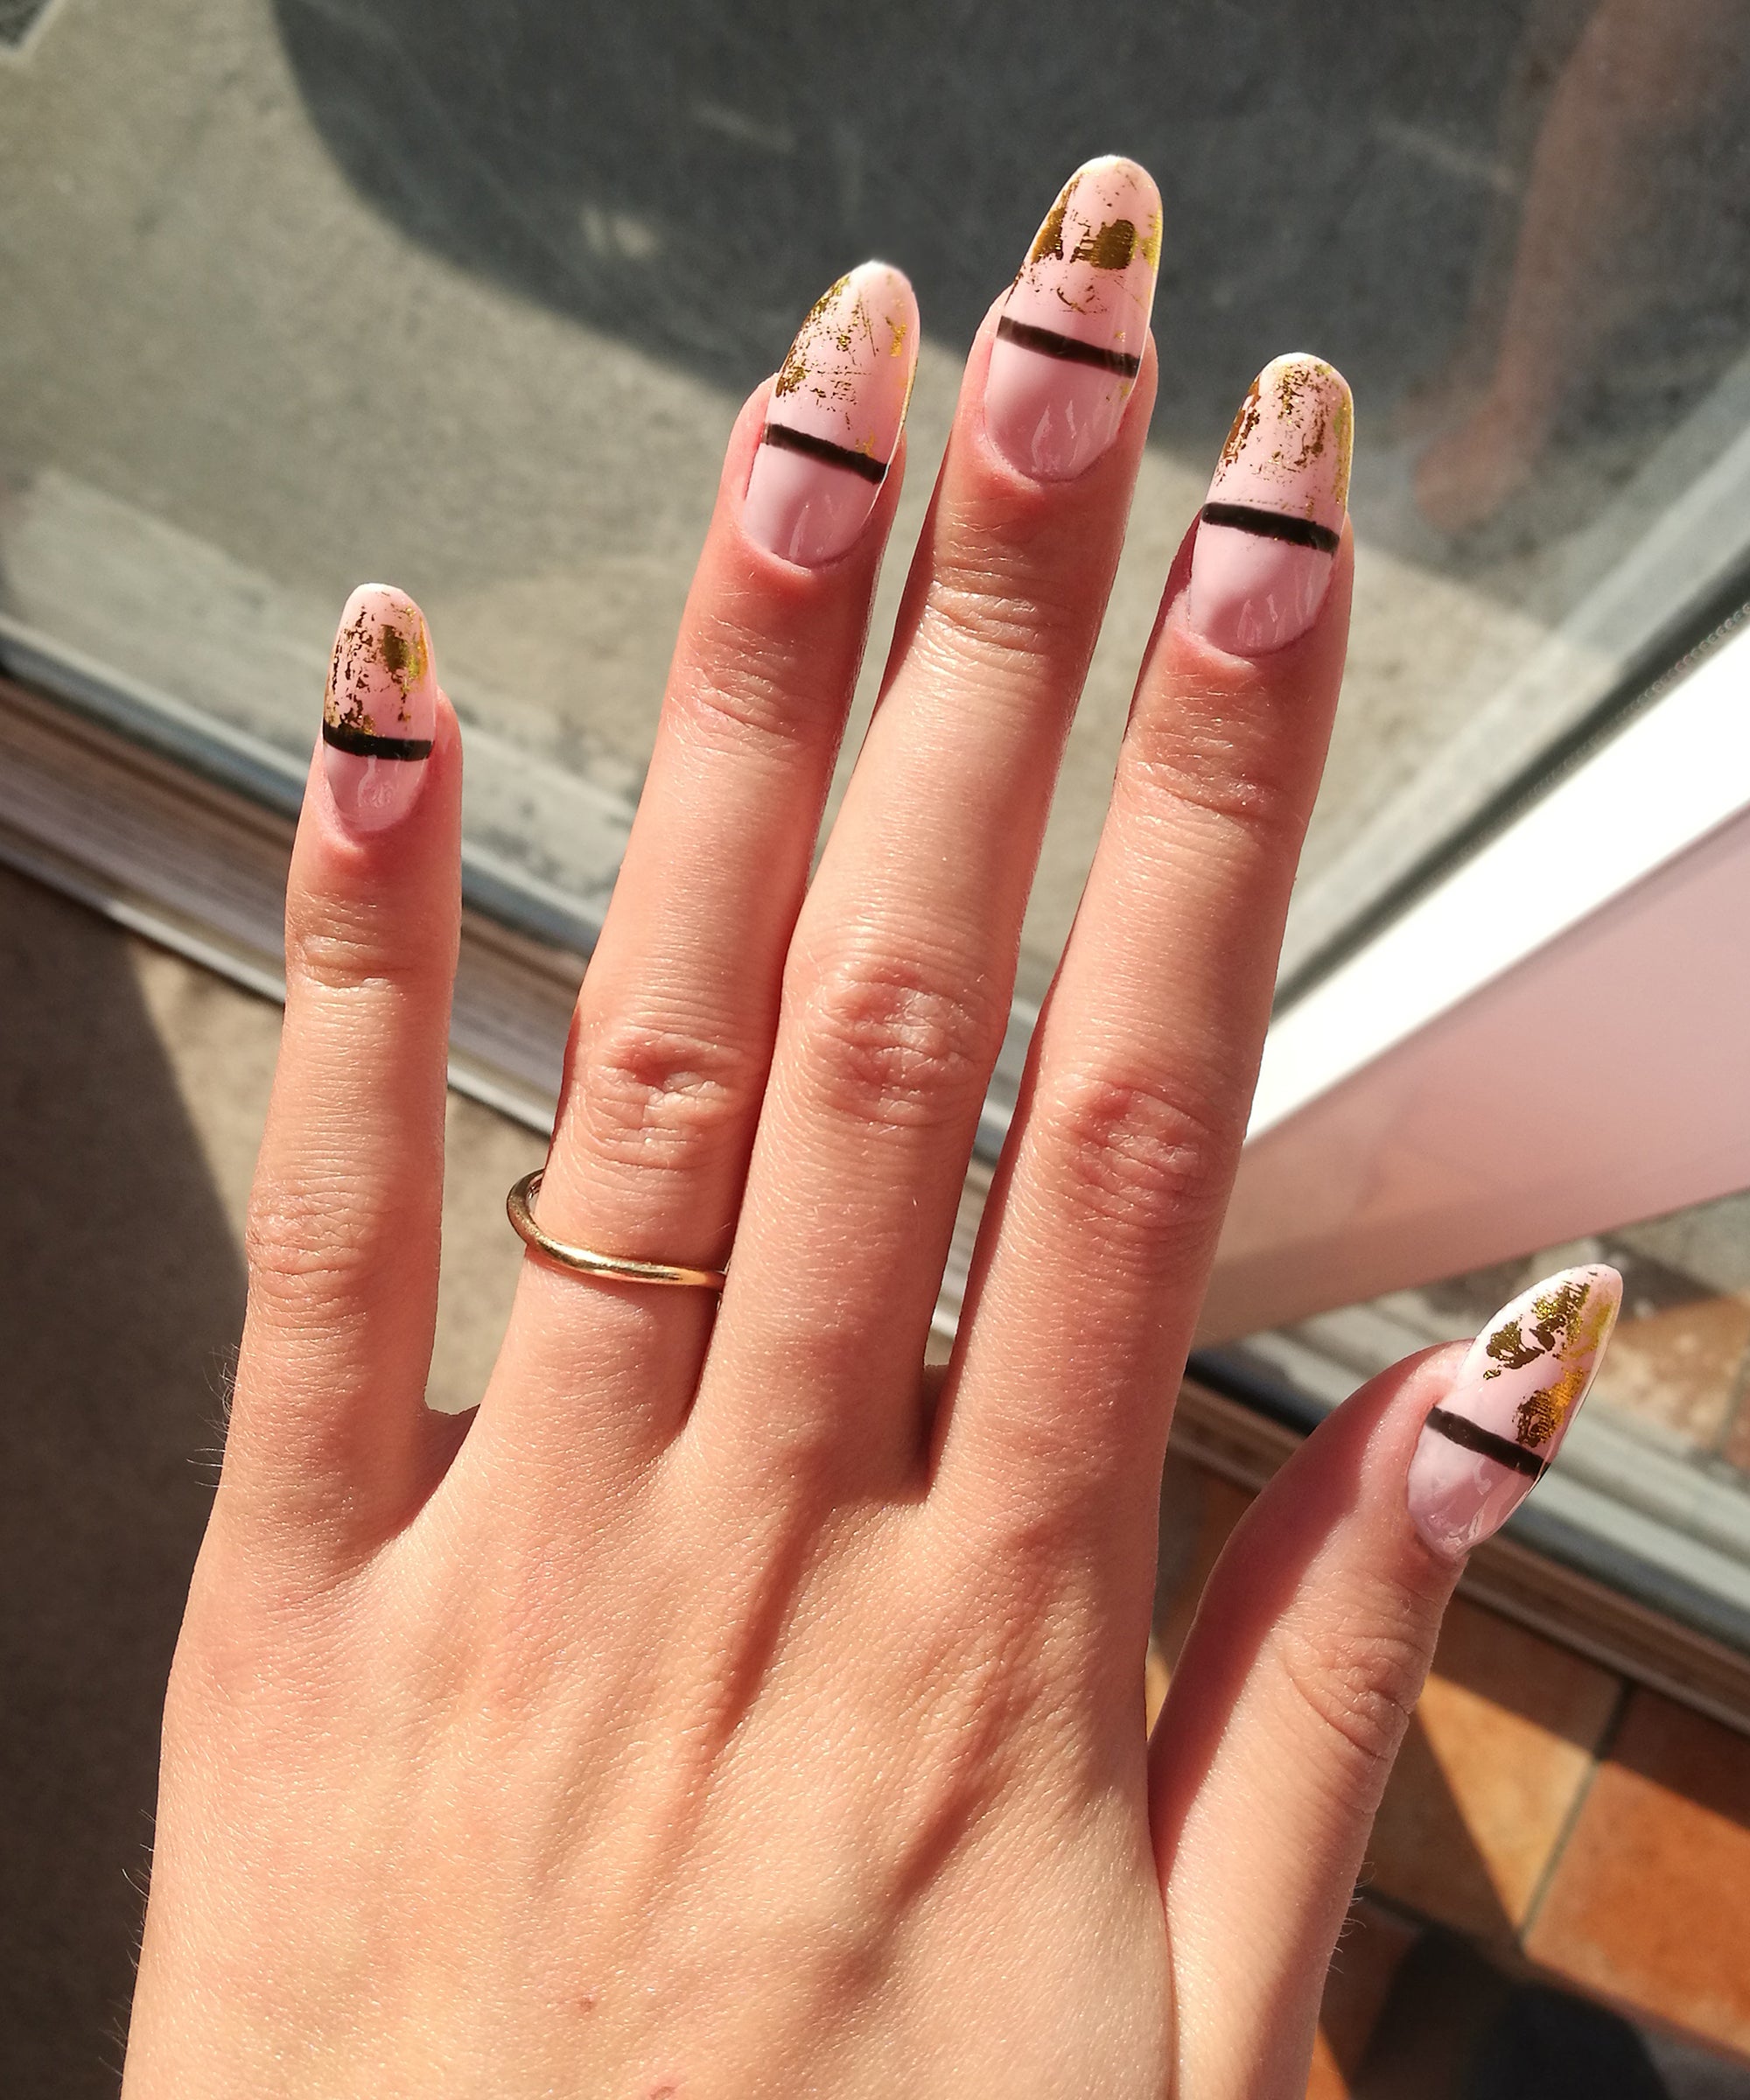 Natural pink nail extension designs | Fake nails, French nails, White nails